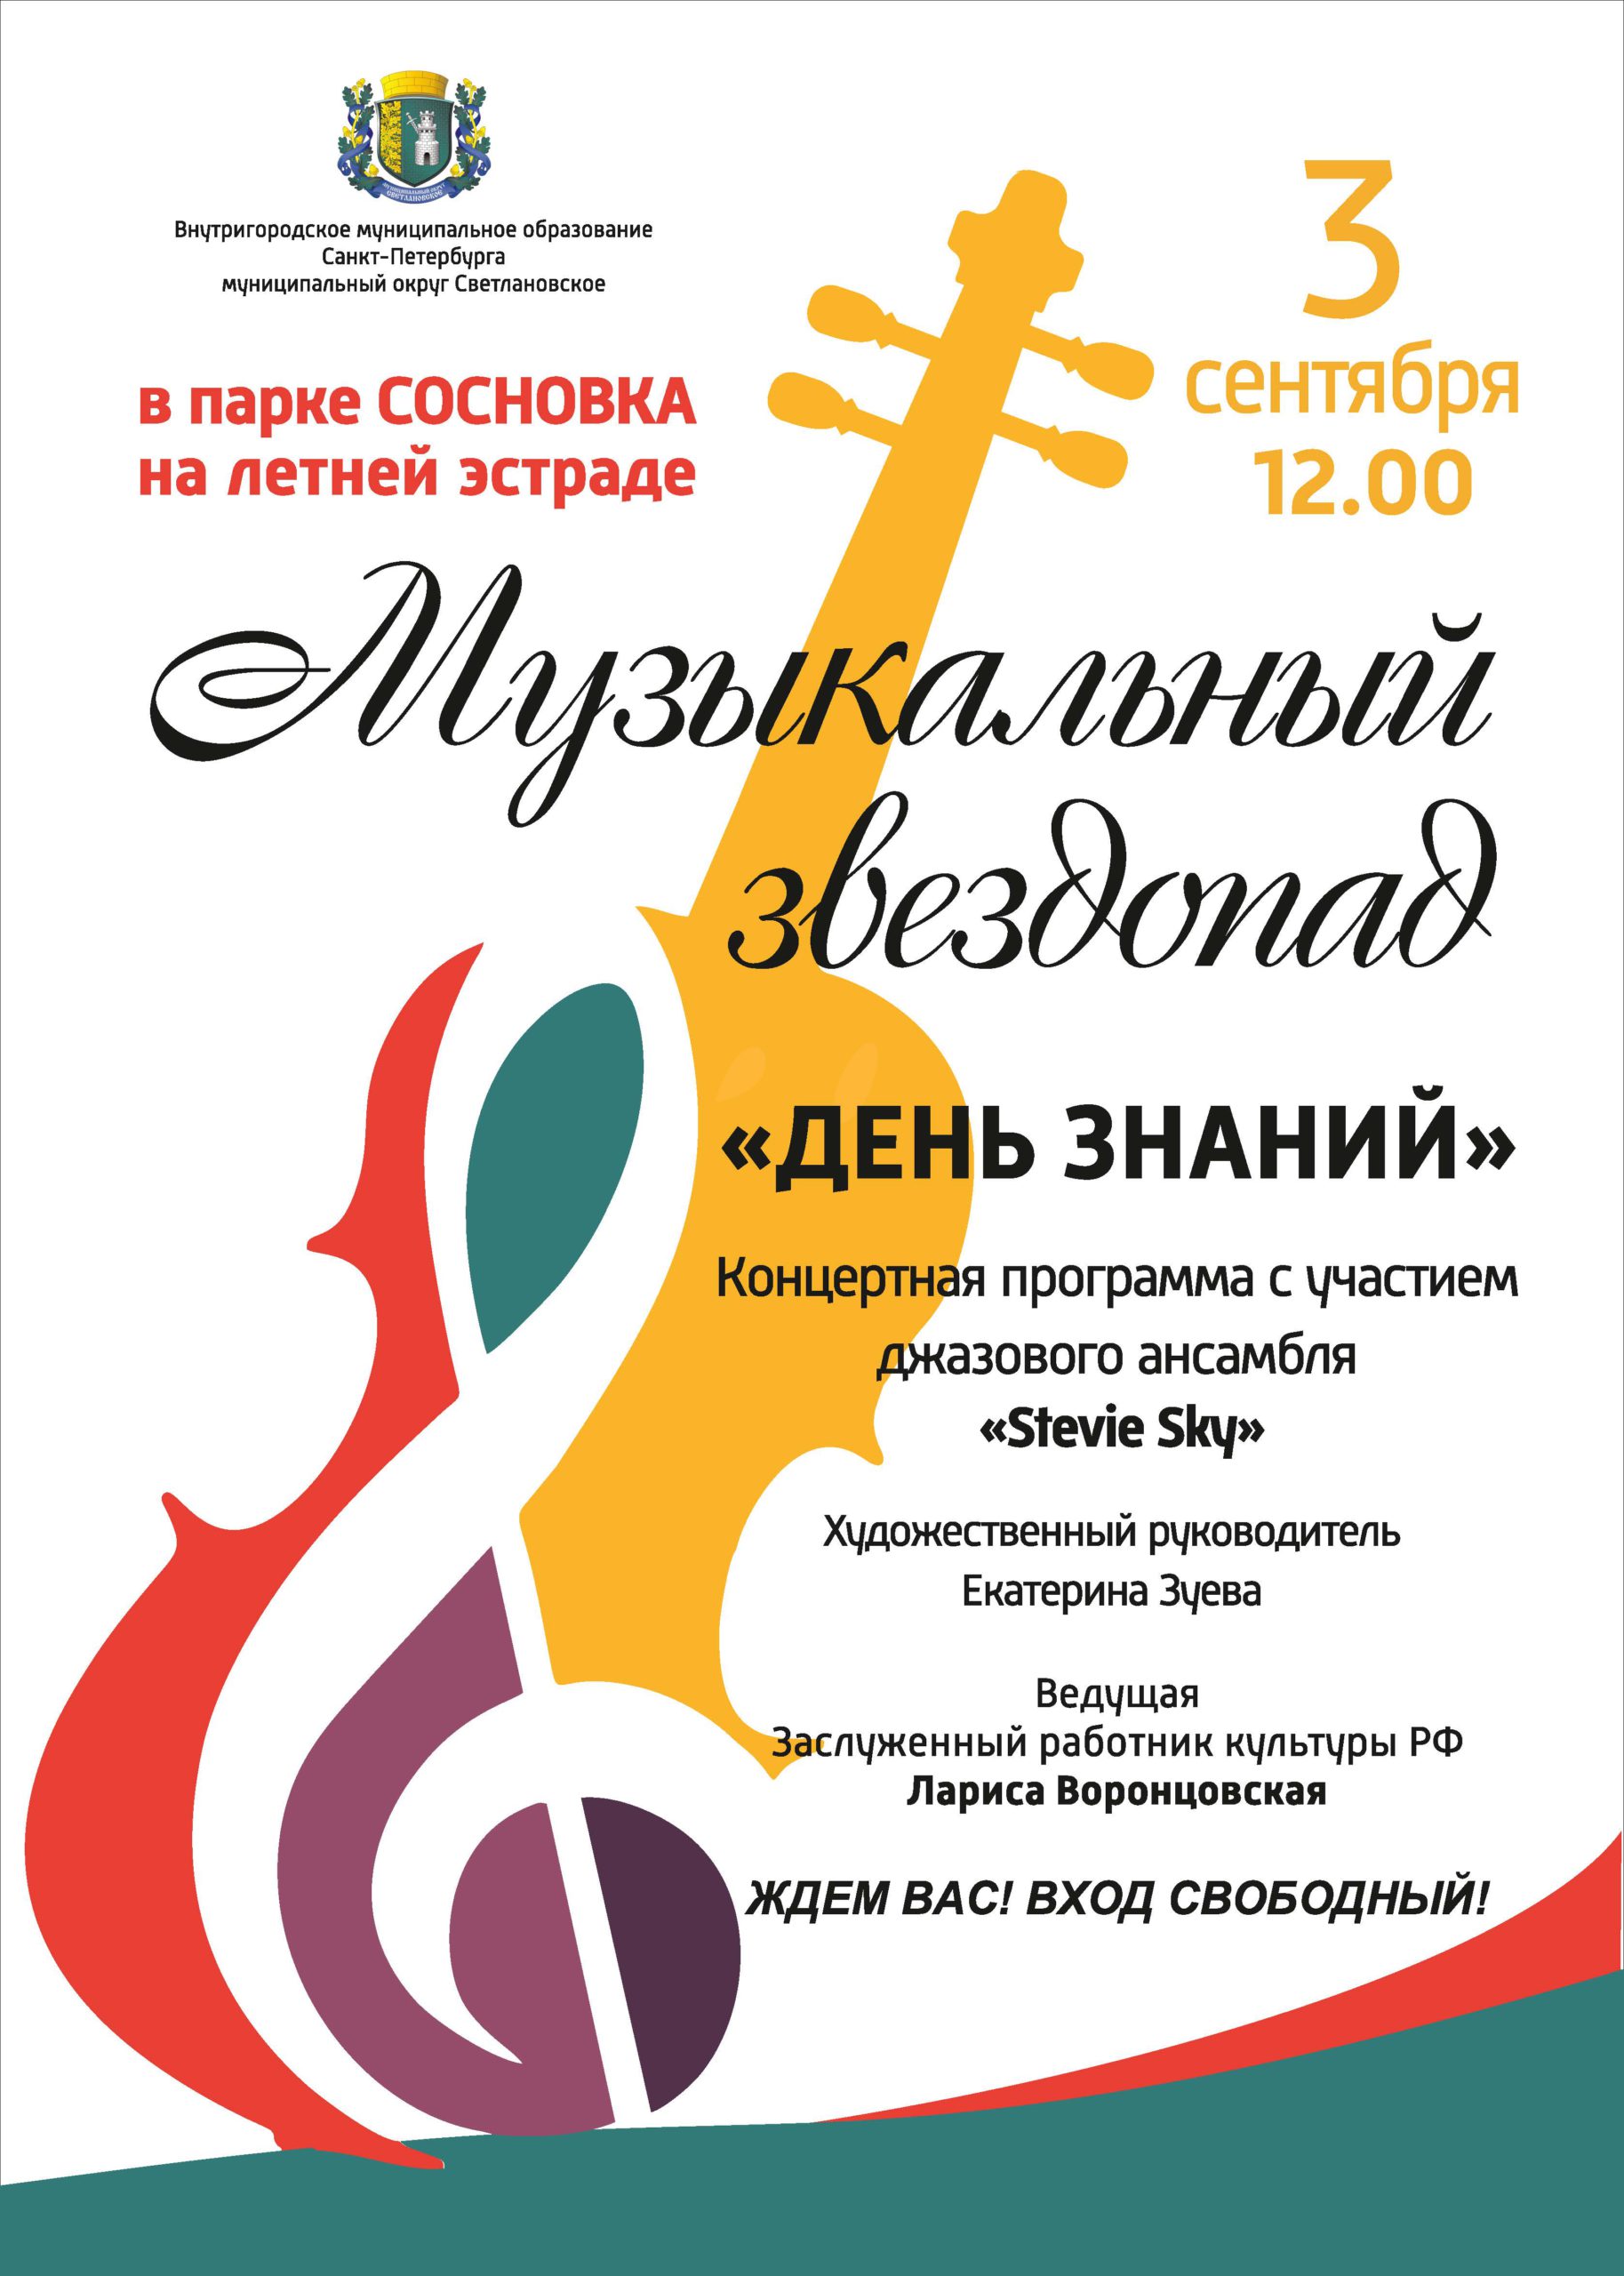 Музыкальный звездопад - концерт в парке Сосновка 3 сентября в 12:00